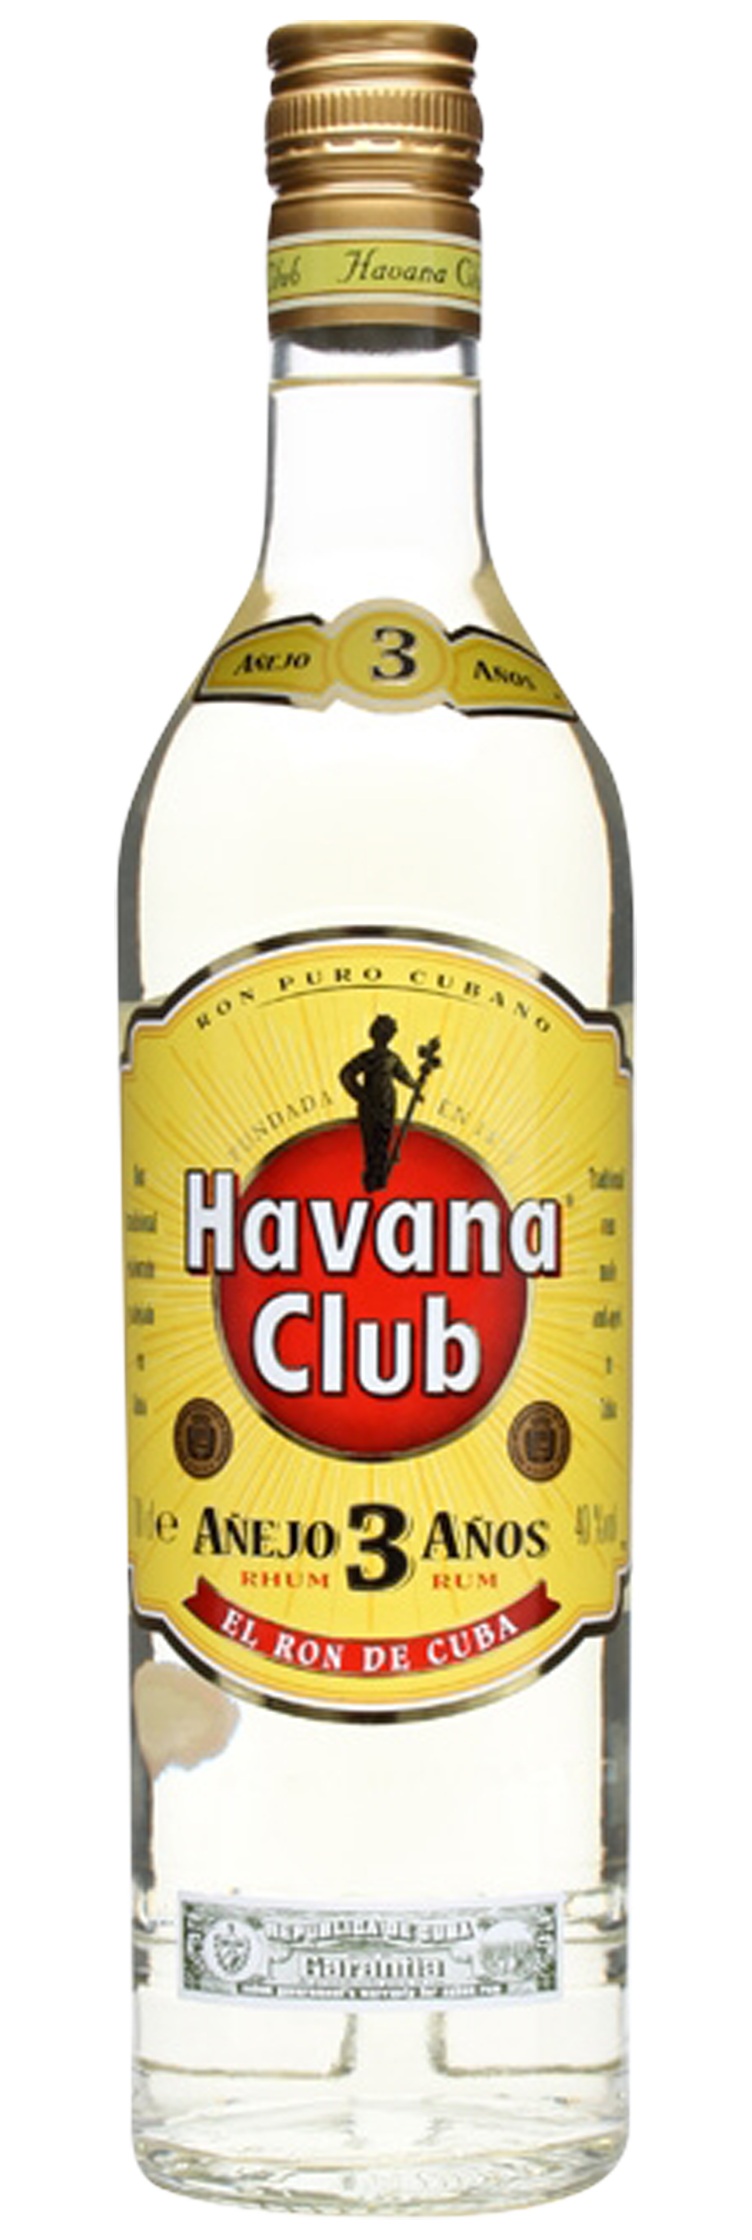 Havana Club Year Old Rum